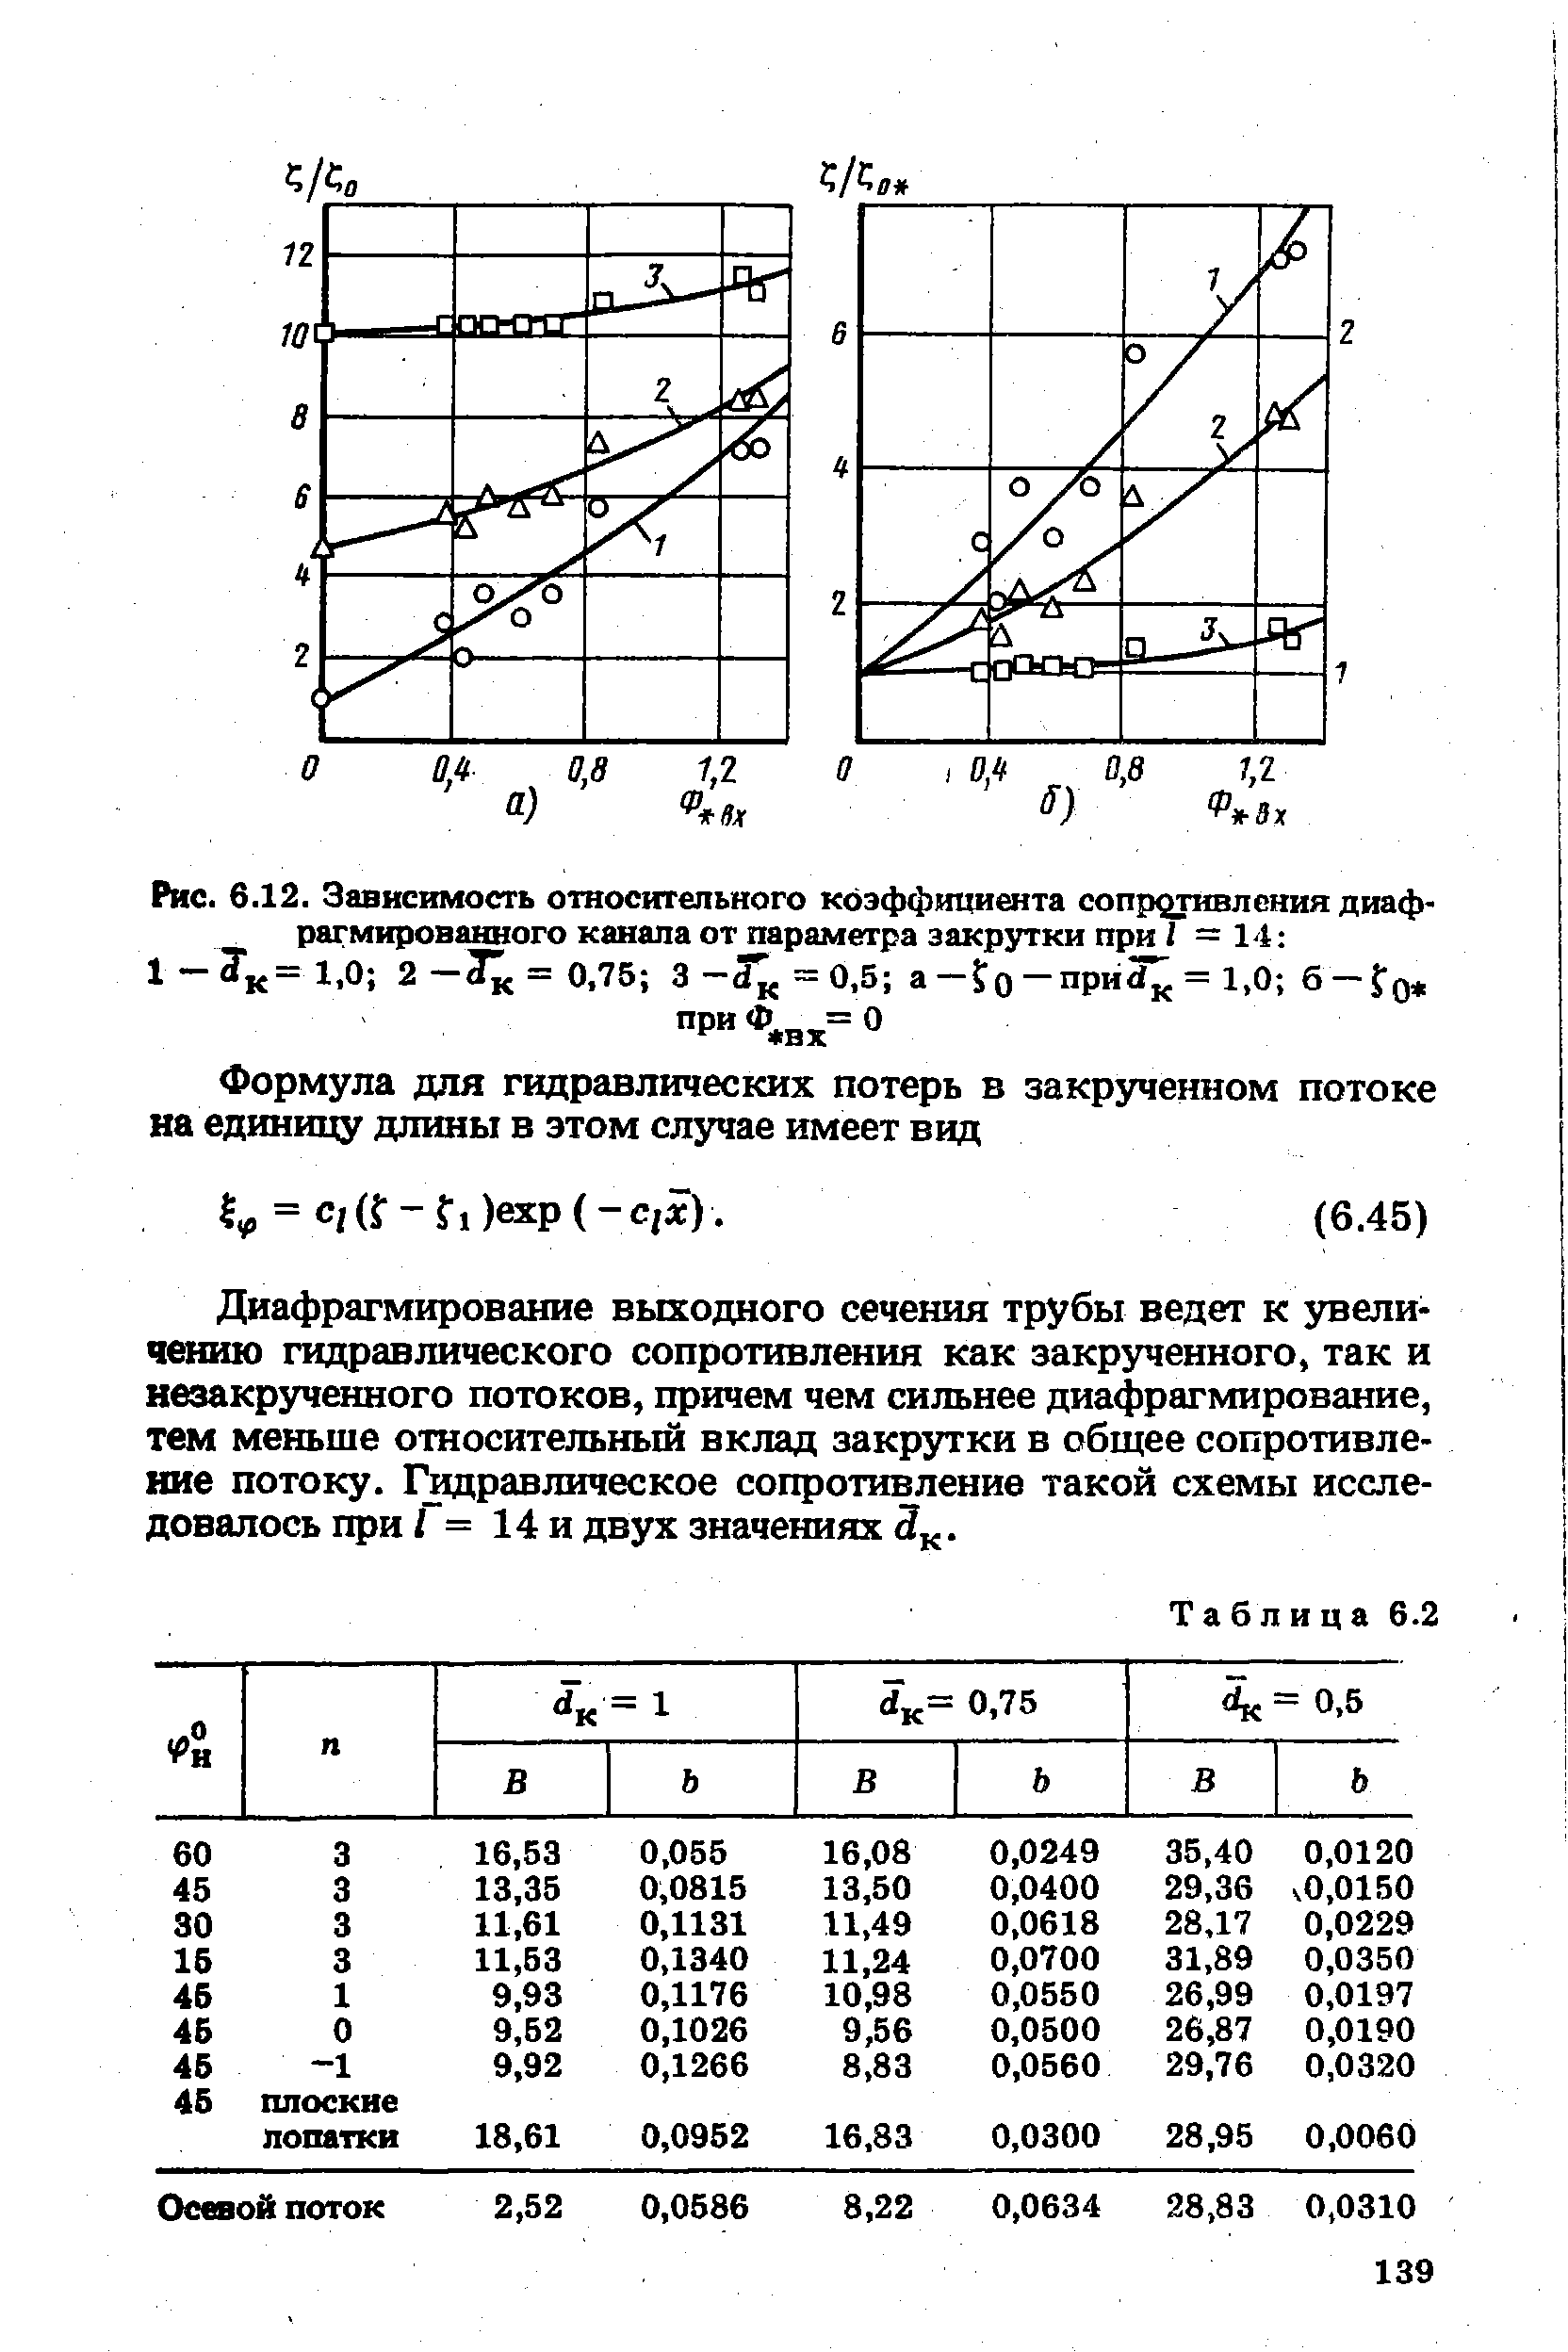 Рис. 6.12. Зависимость относительного коэффиниента сопротивления диафрагмированного канала от параметра закрутки при I =14 
